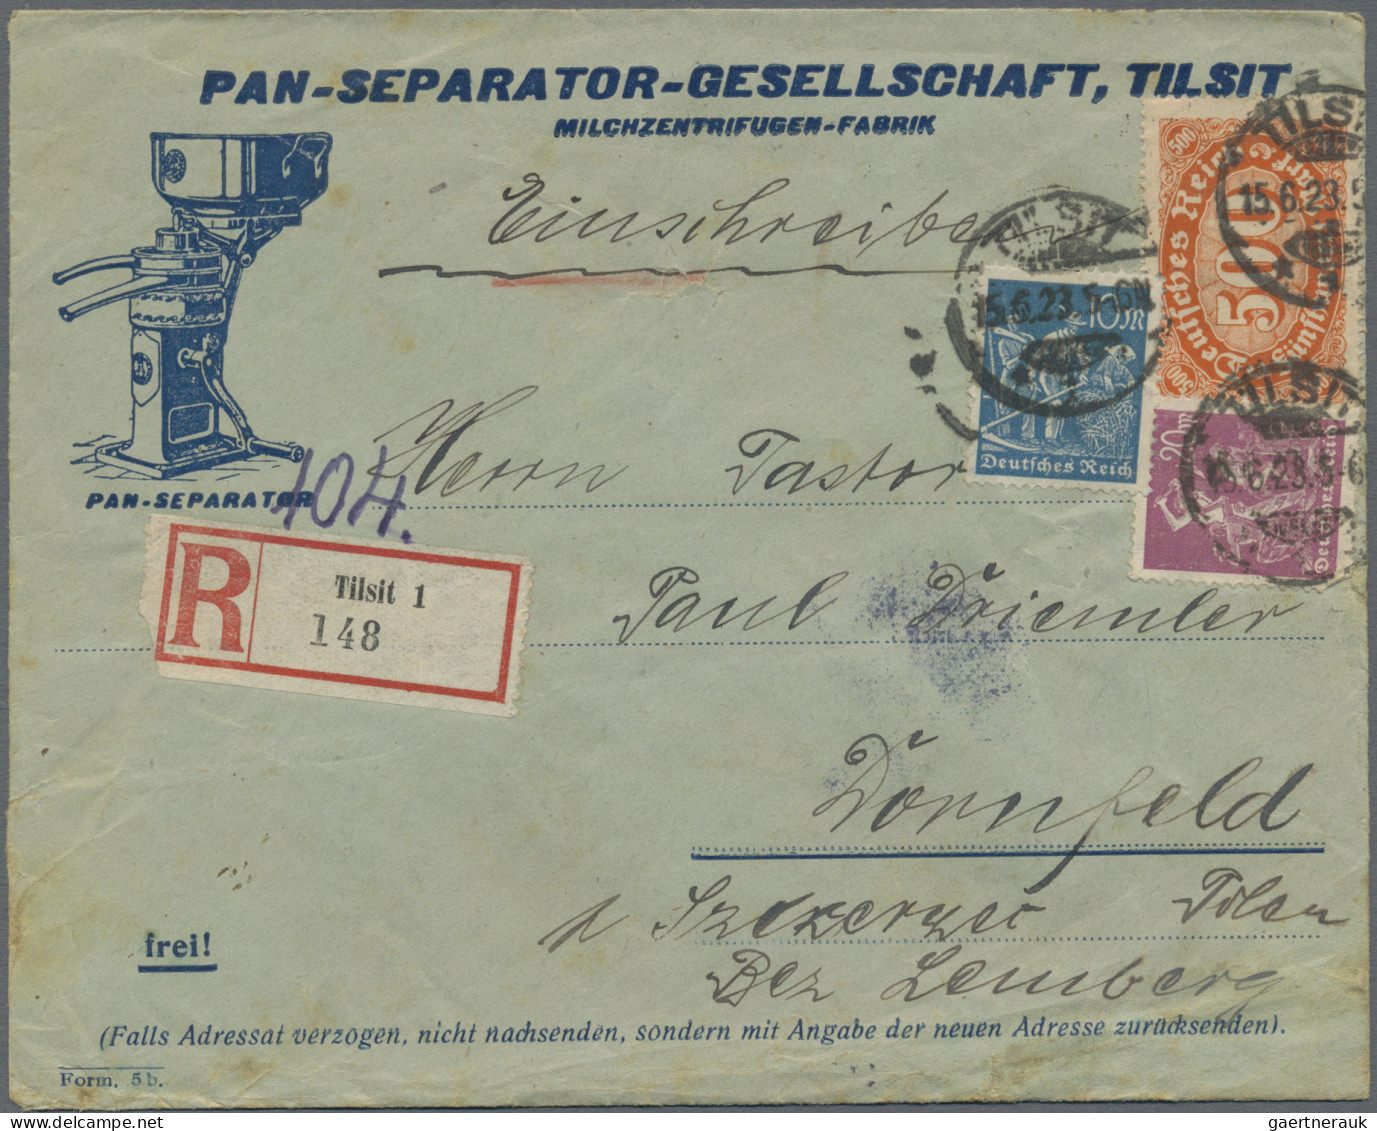 Deutsches Reich - Inflation: 1922/1923, Korrespondenz an einen evangelischen Pas